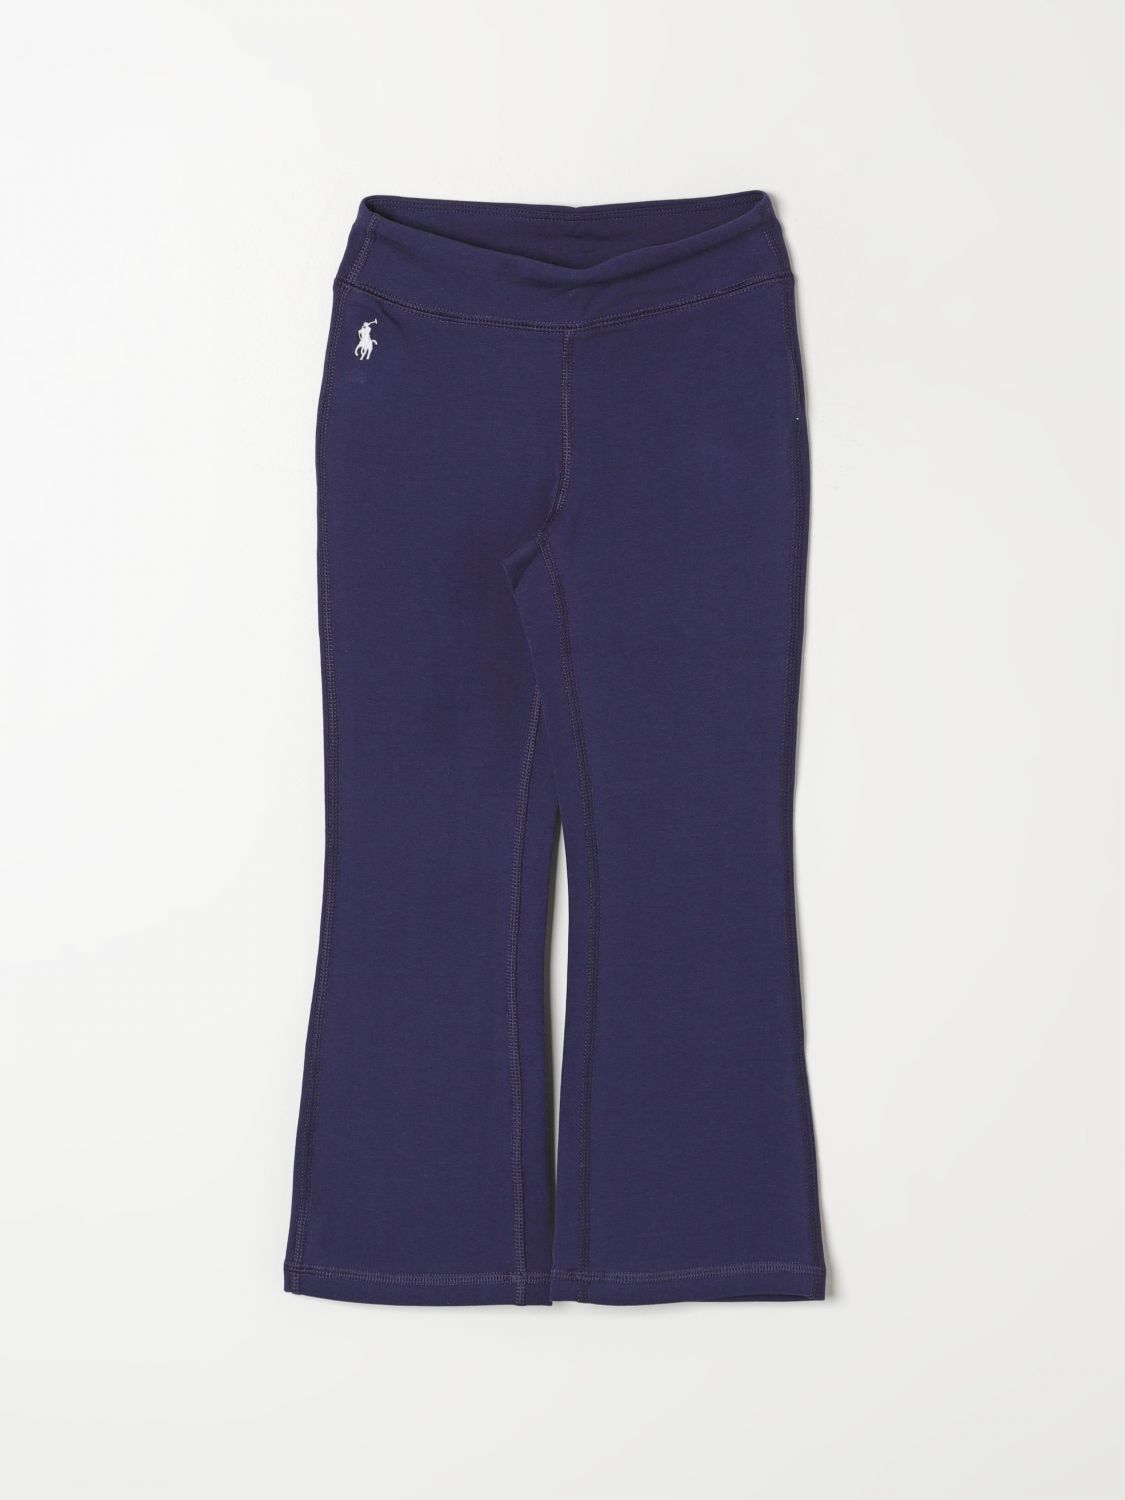 Polo Ralph Lauren Pants  Kids Color Blue